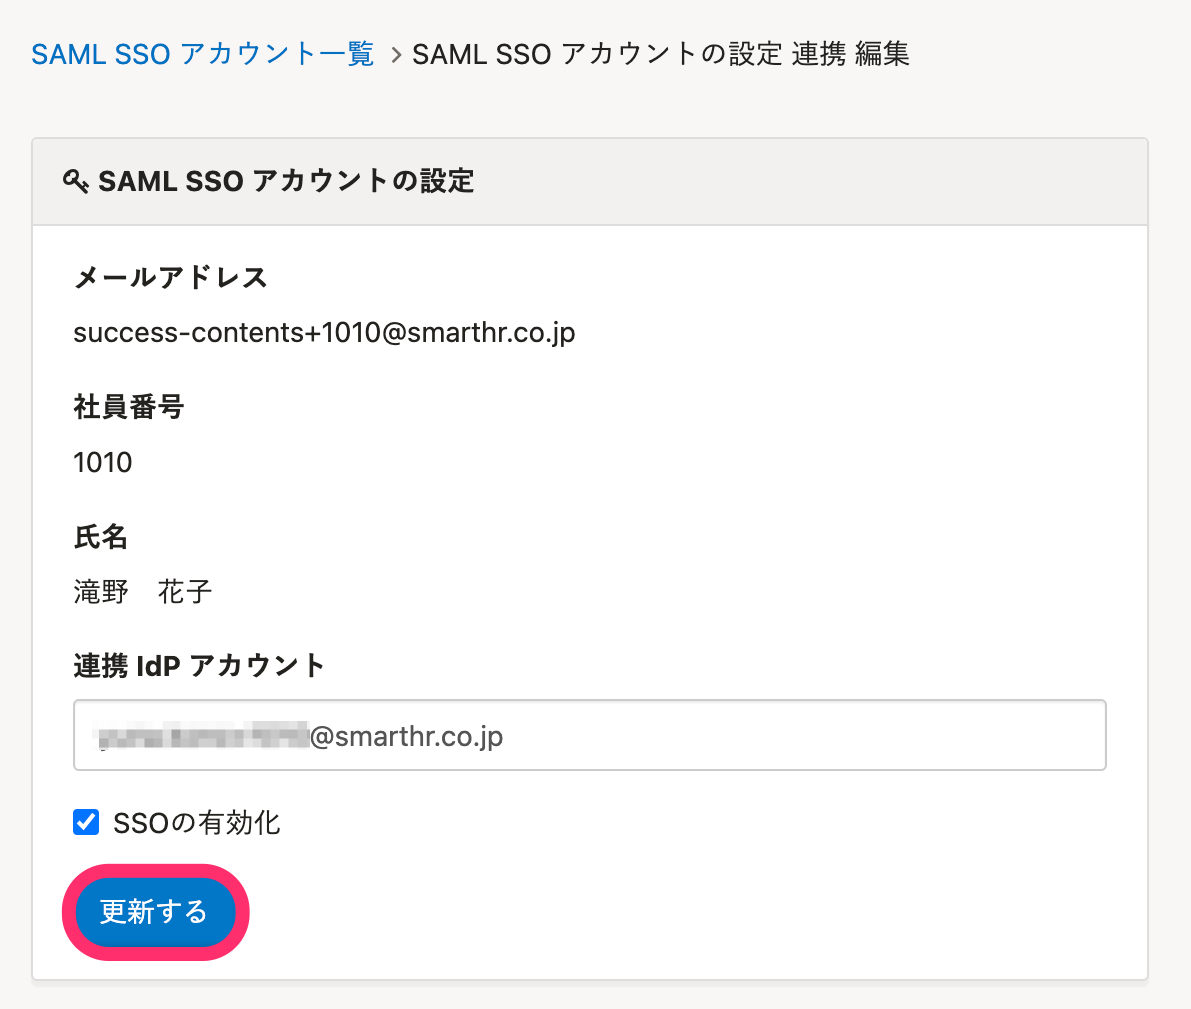 SAML SSO アカウントの設定 連携 編集画面のスクリーンショット